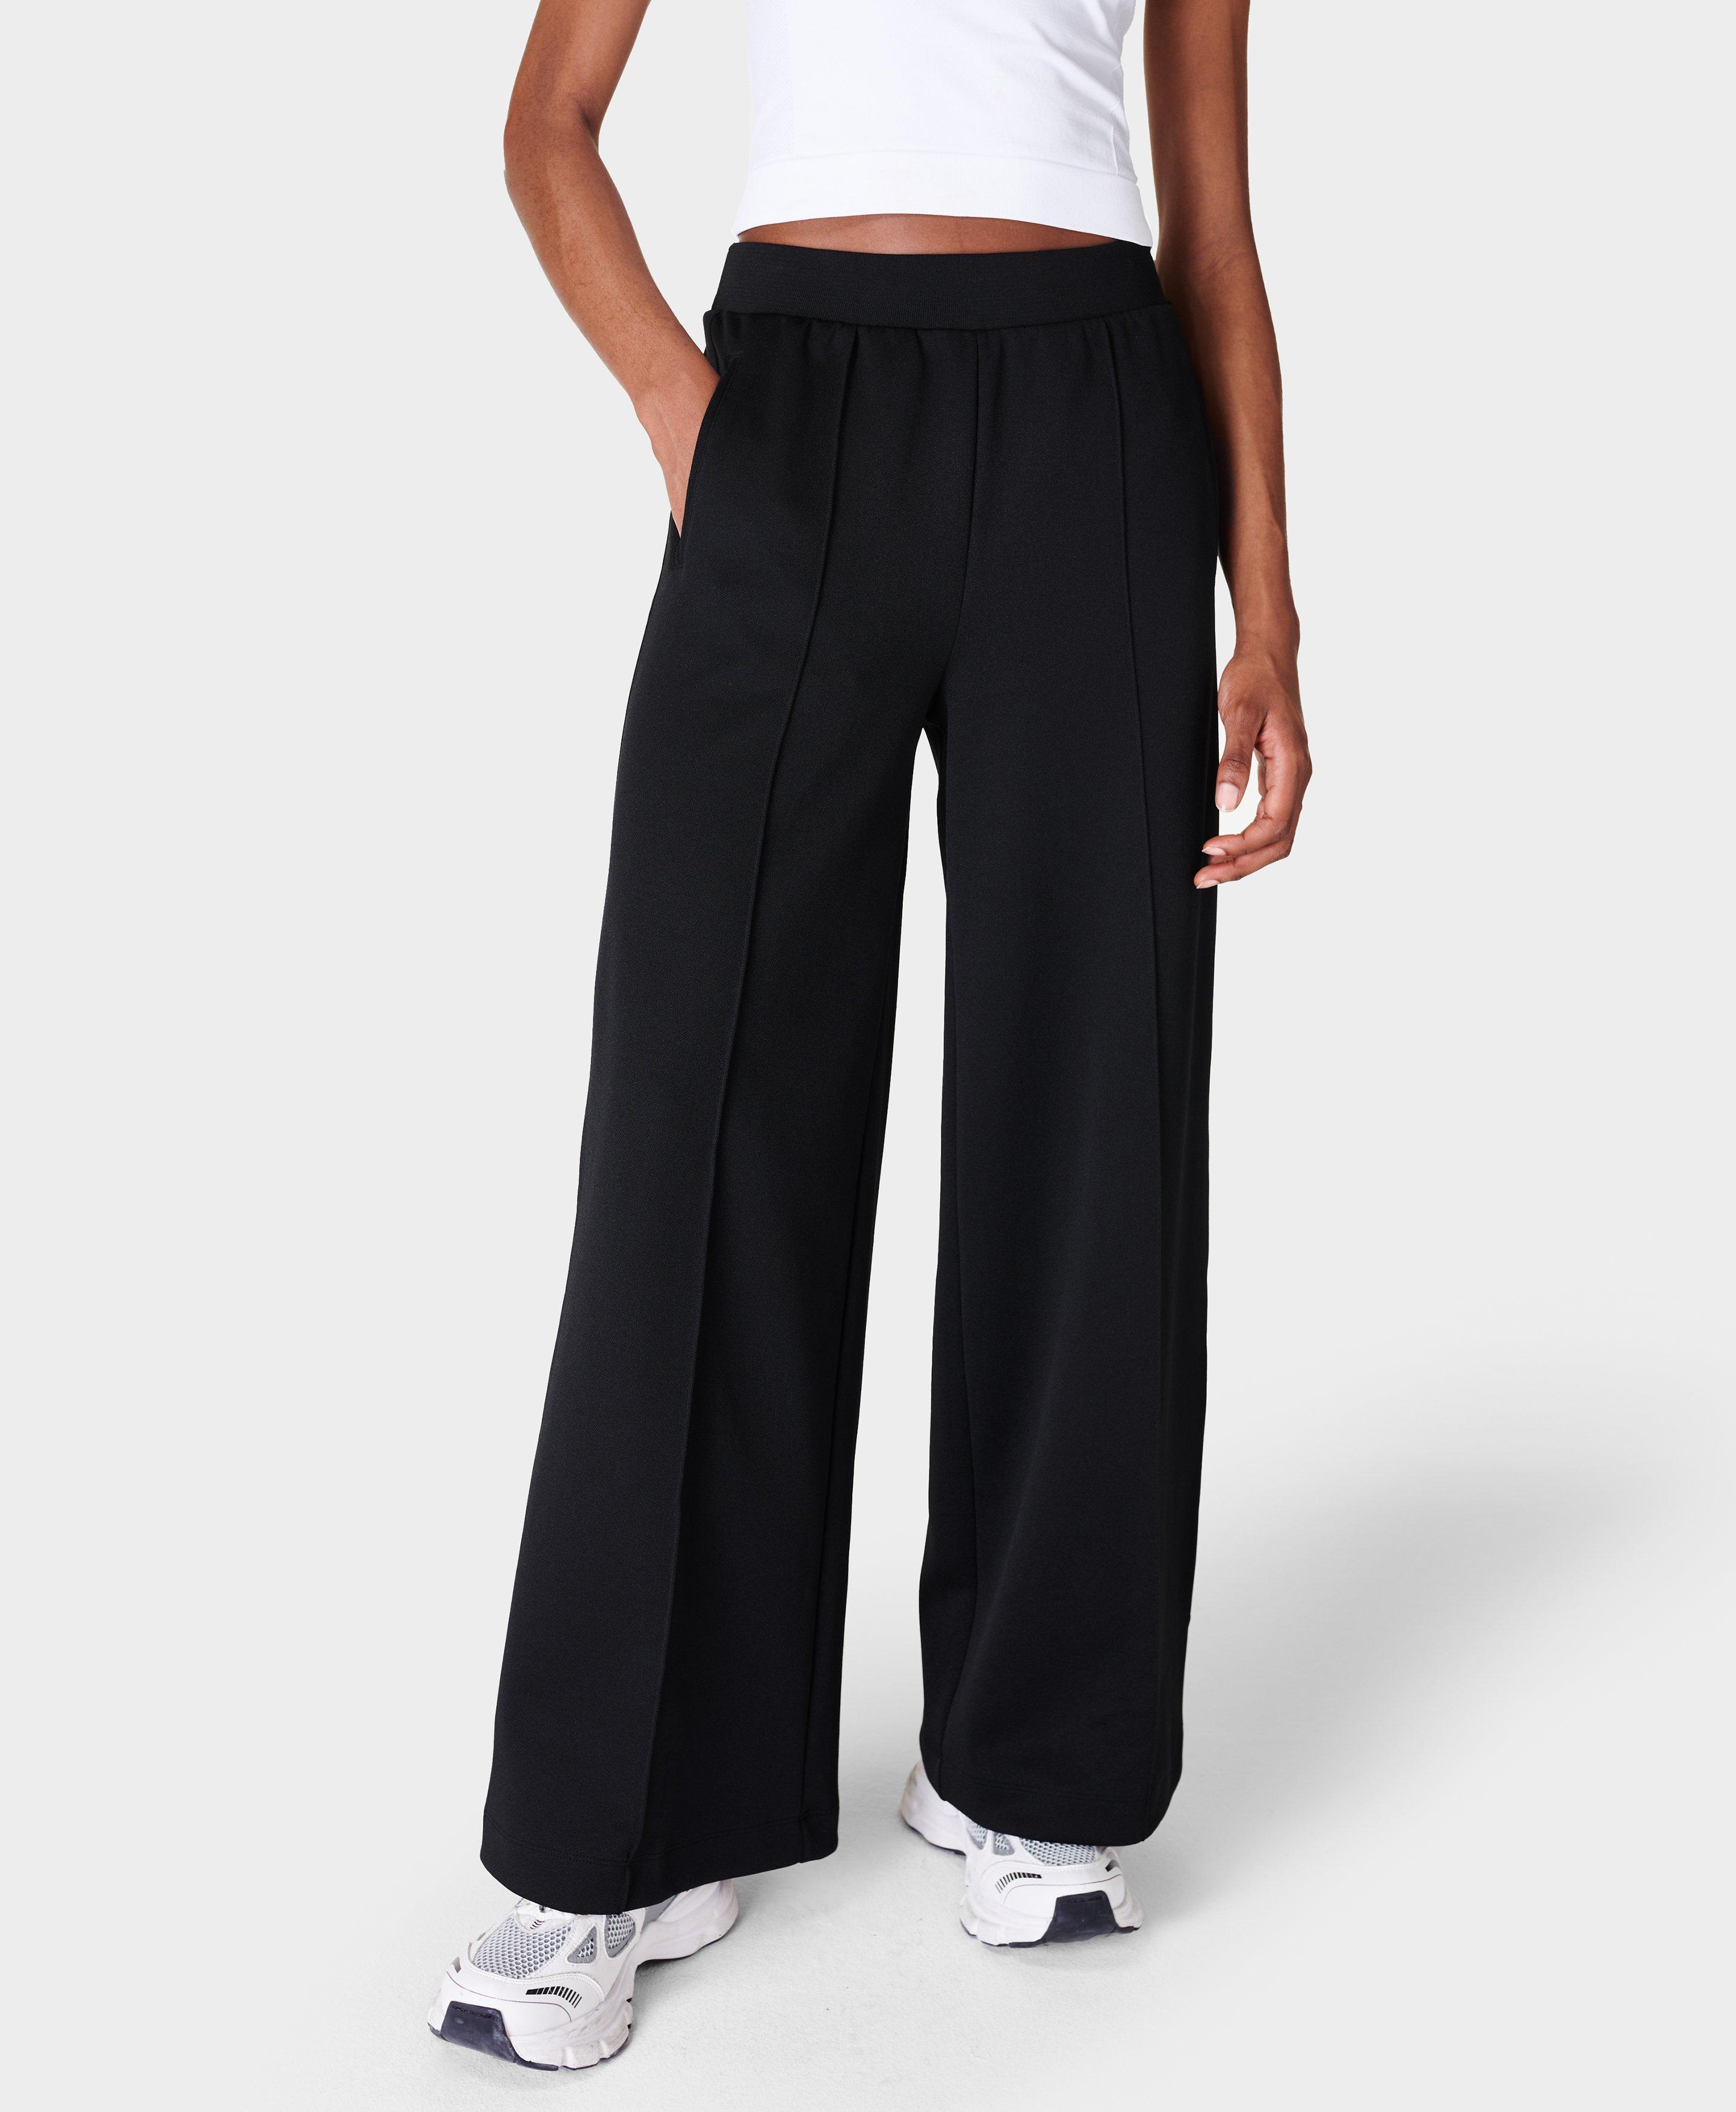 Retro Tricot Pants- black | Women's Trousers & Yoga Pants | www ...